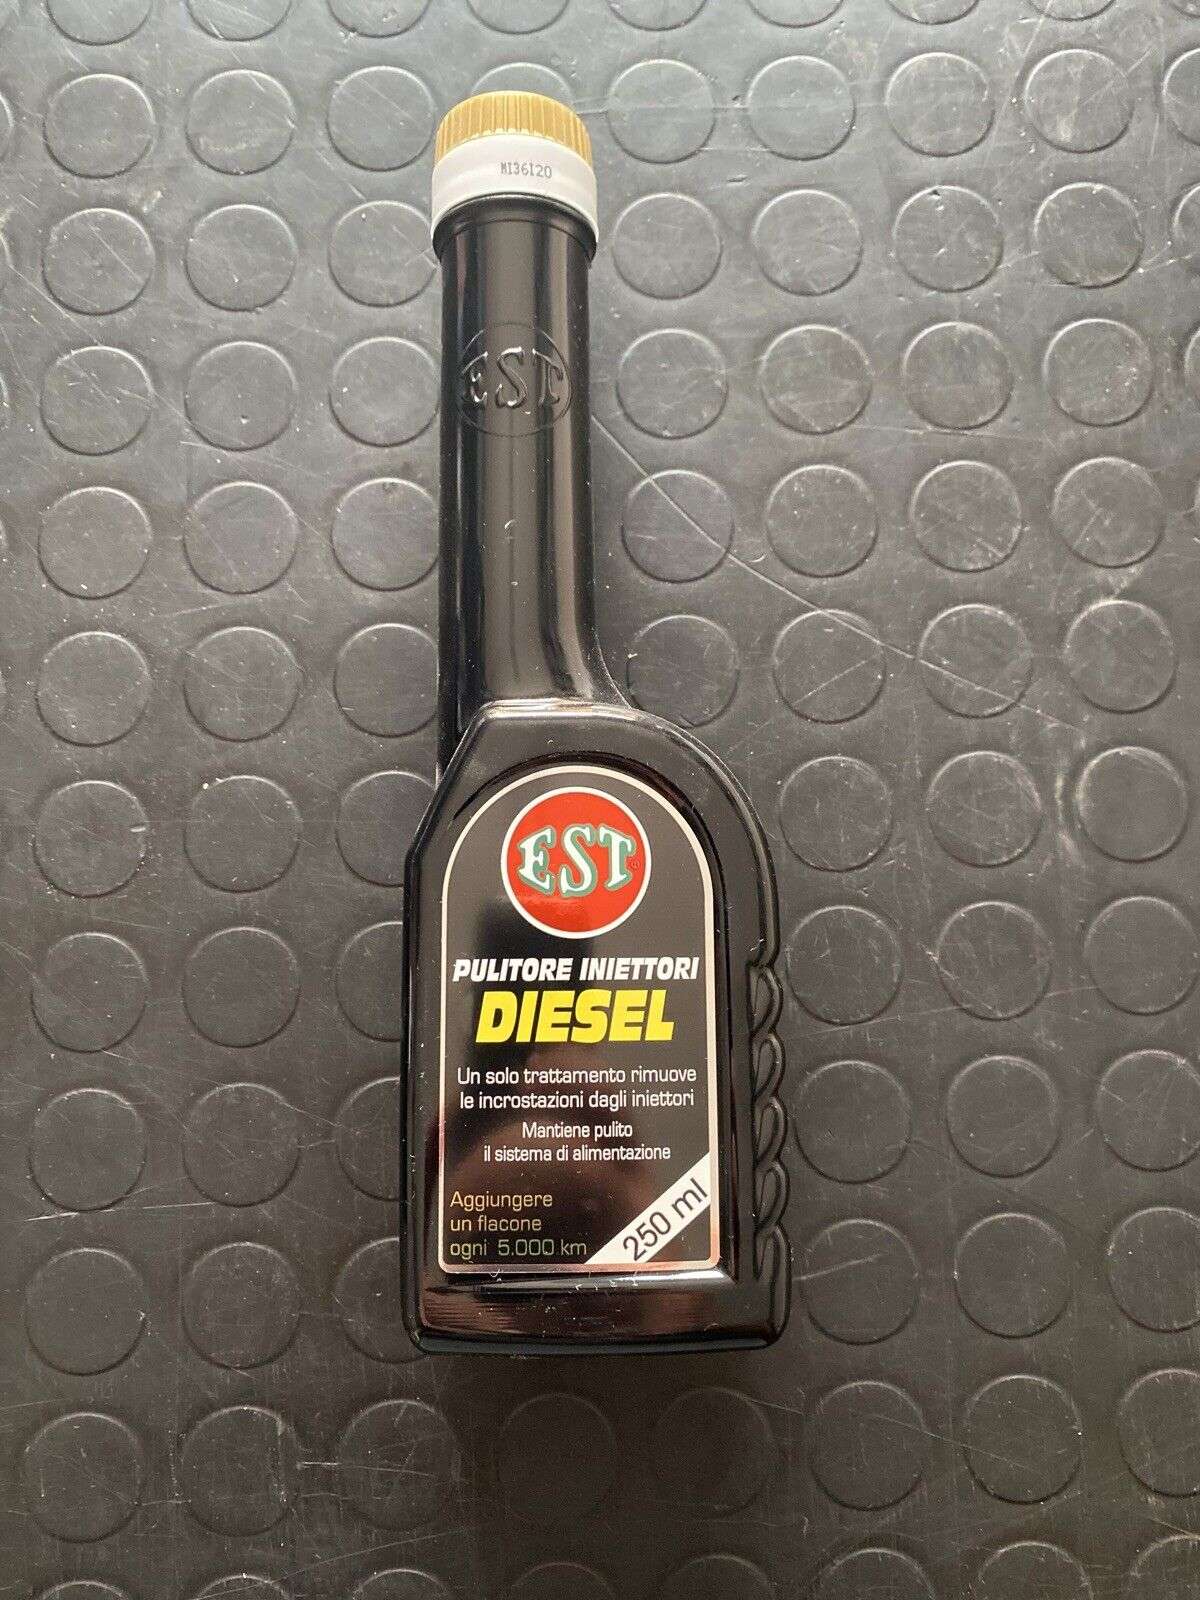 Pulisci Iniettori Est Diesel 250ML Additivo Auto - Aricun